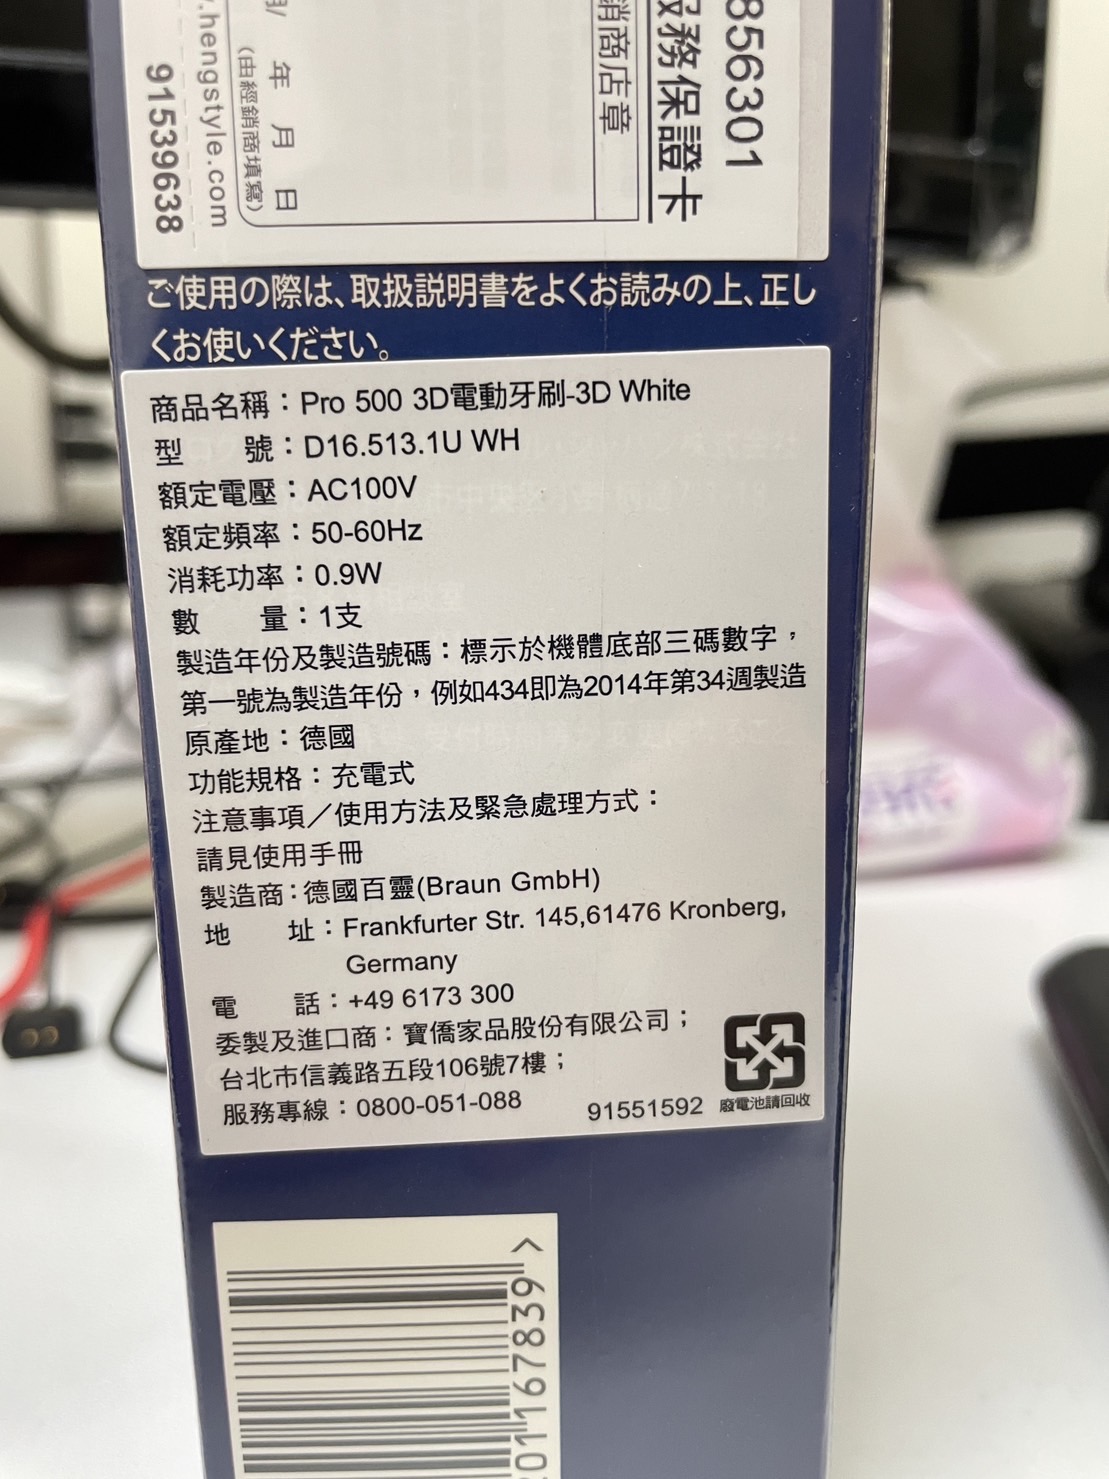 [商業] 德國百靈Oral-B全新亮白3D電動牙刷PRO500